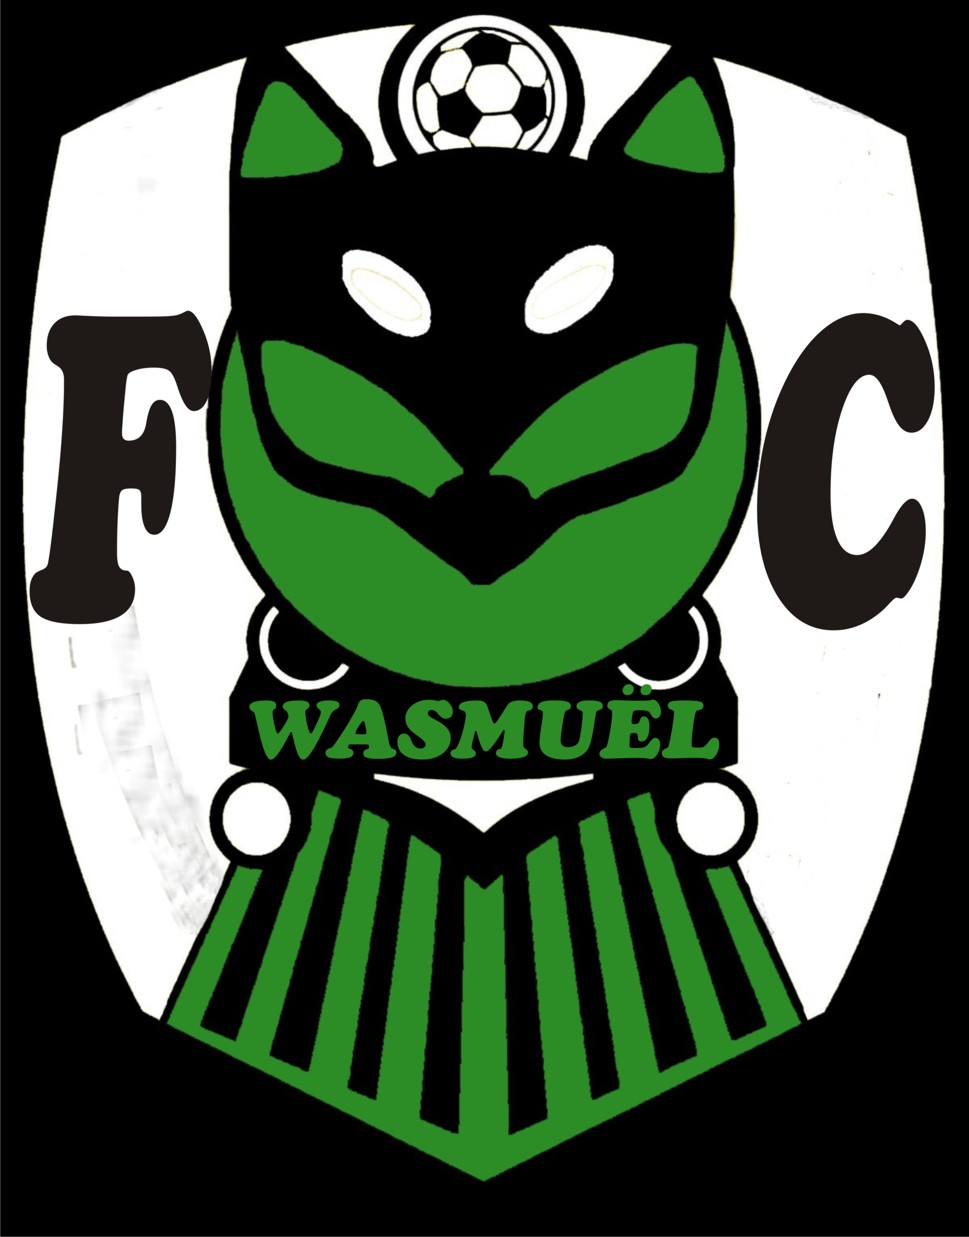 1 - Football Club Wasmuel